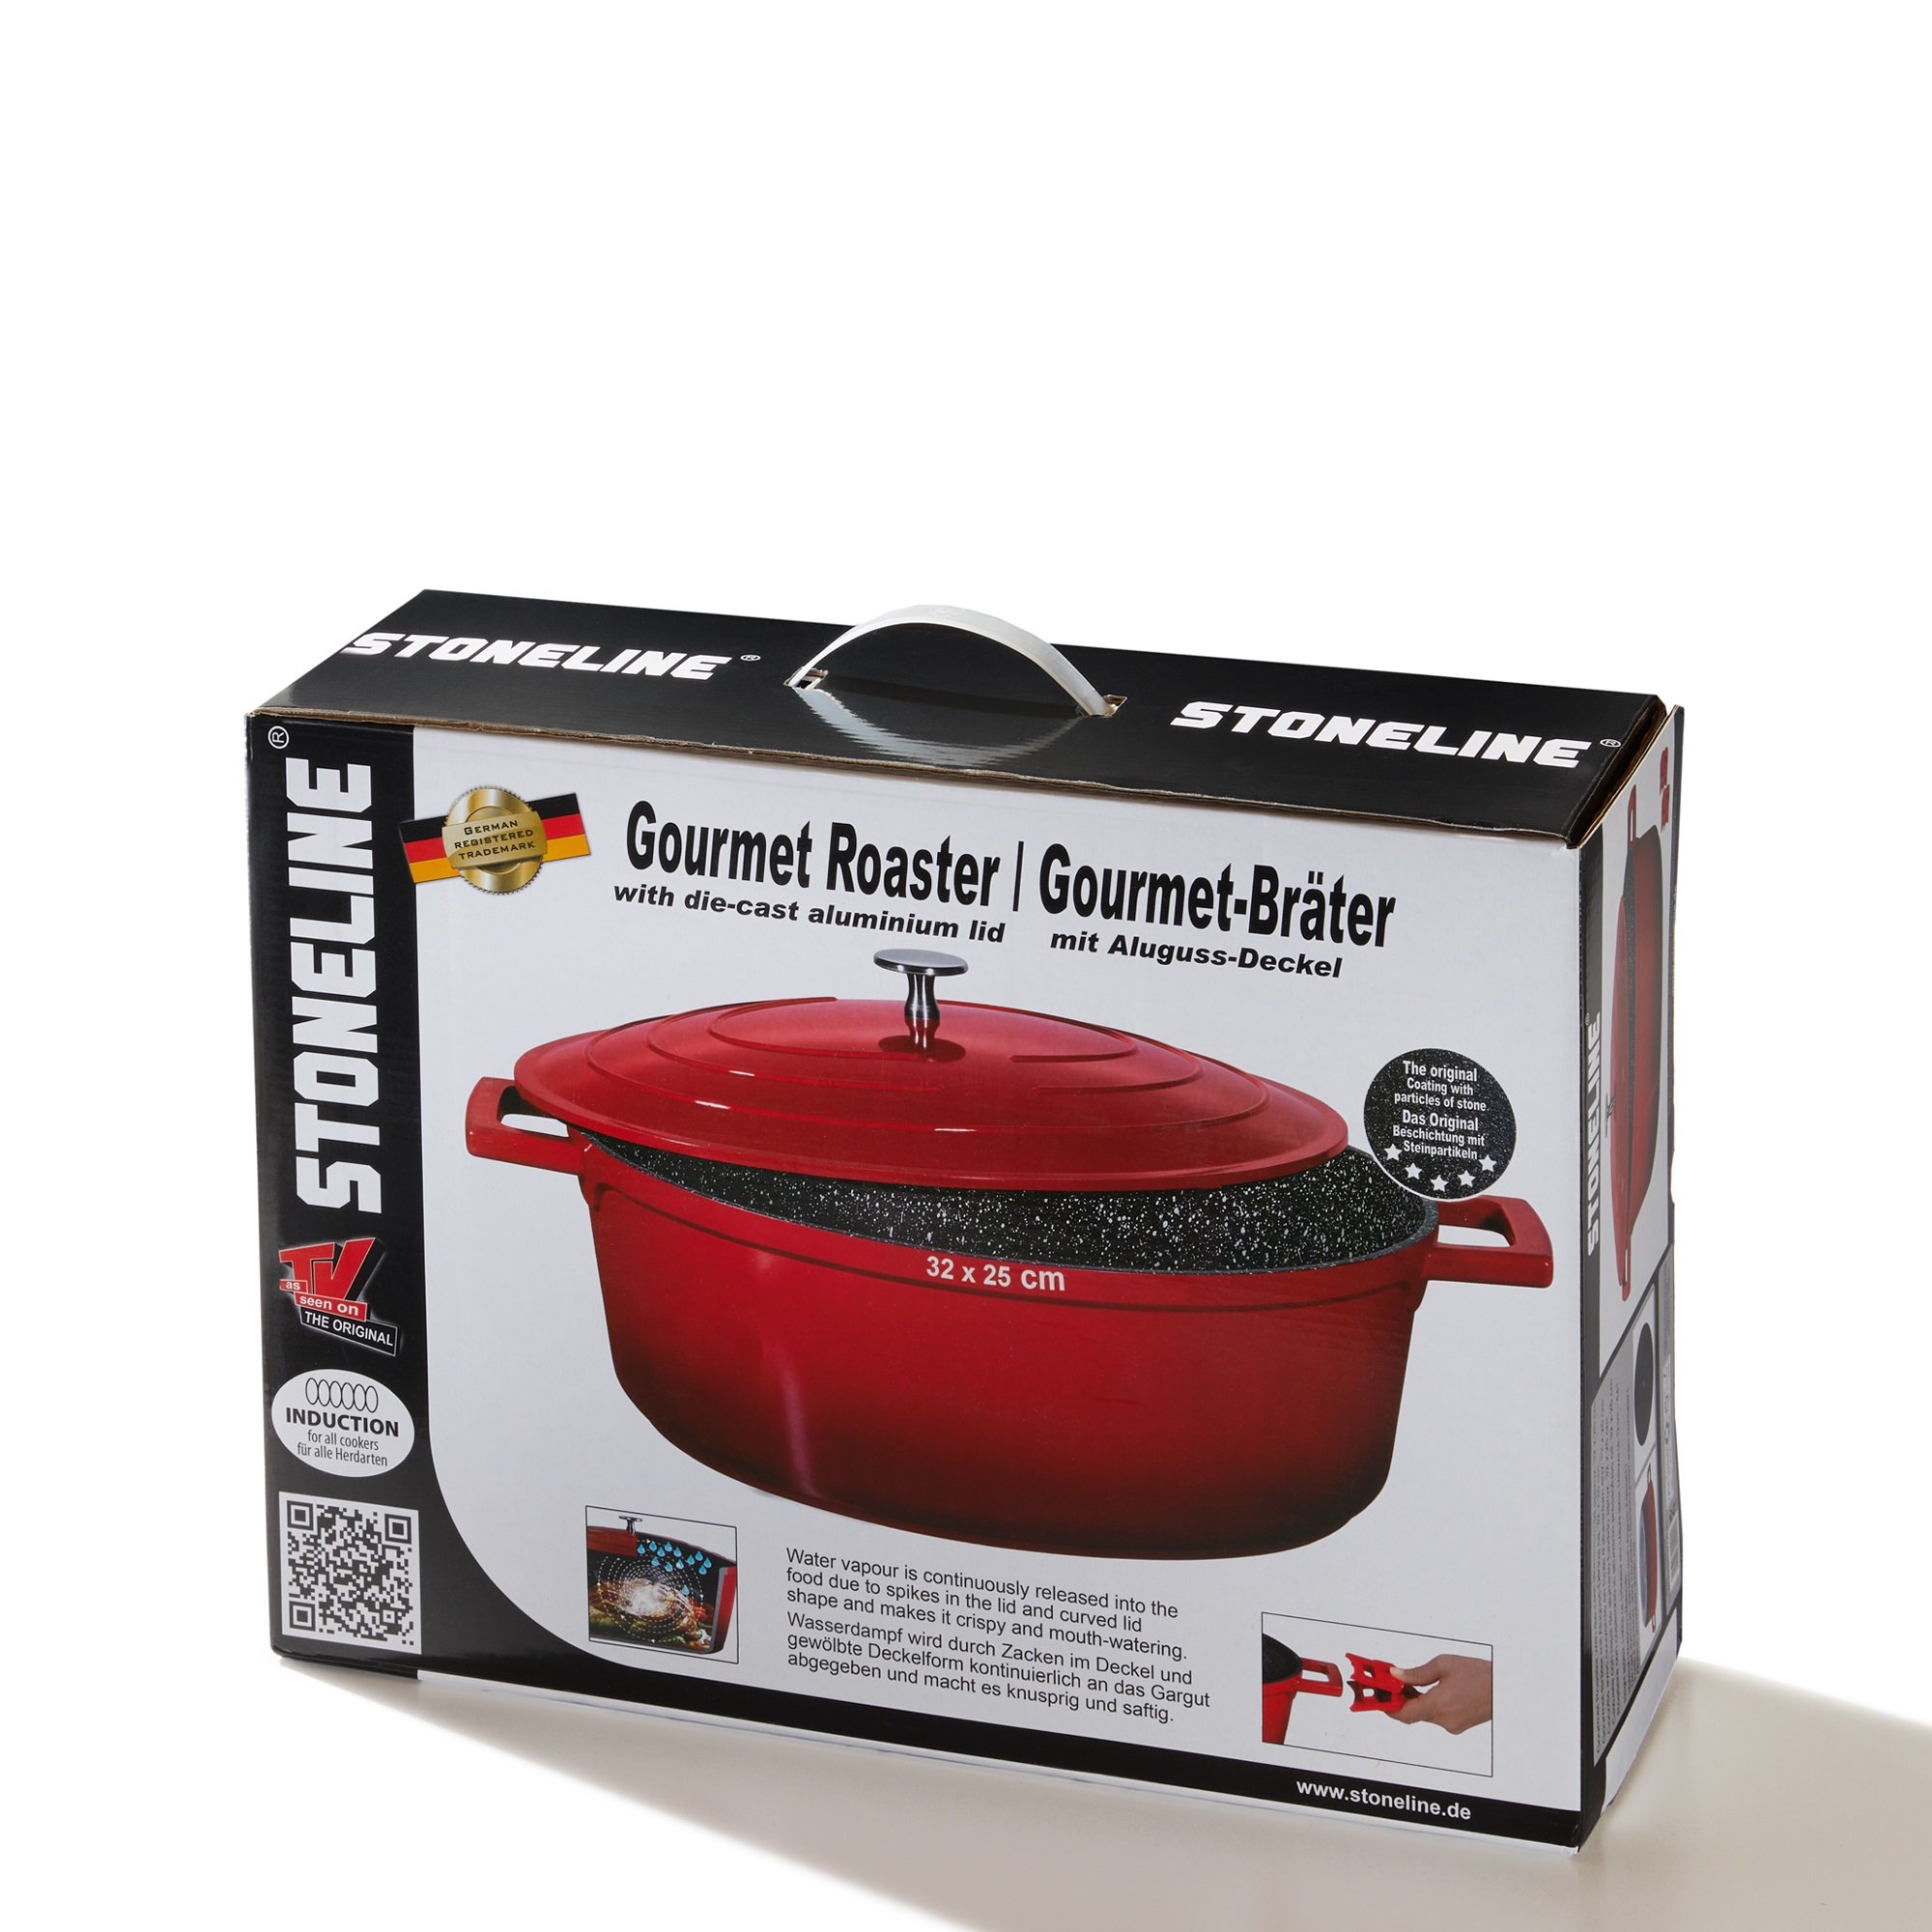 STONELINE® Gourmet asador 32x25 cm con tapa, apto para horno e inducción, antiadherente, rojo cereza